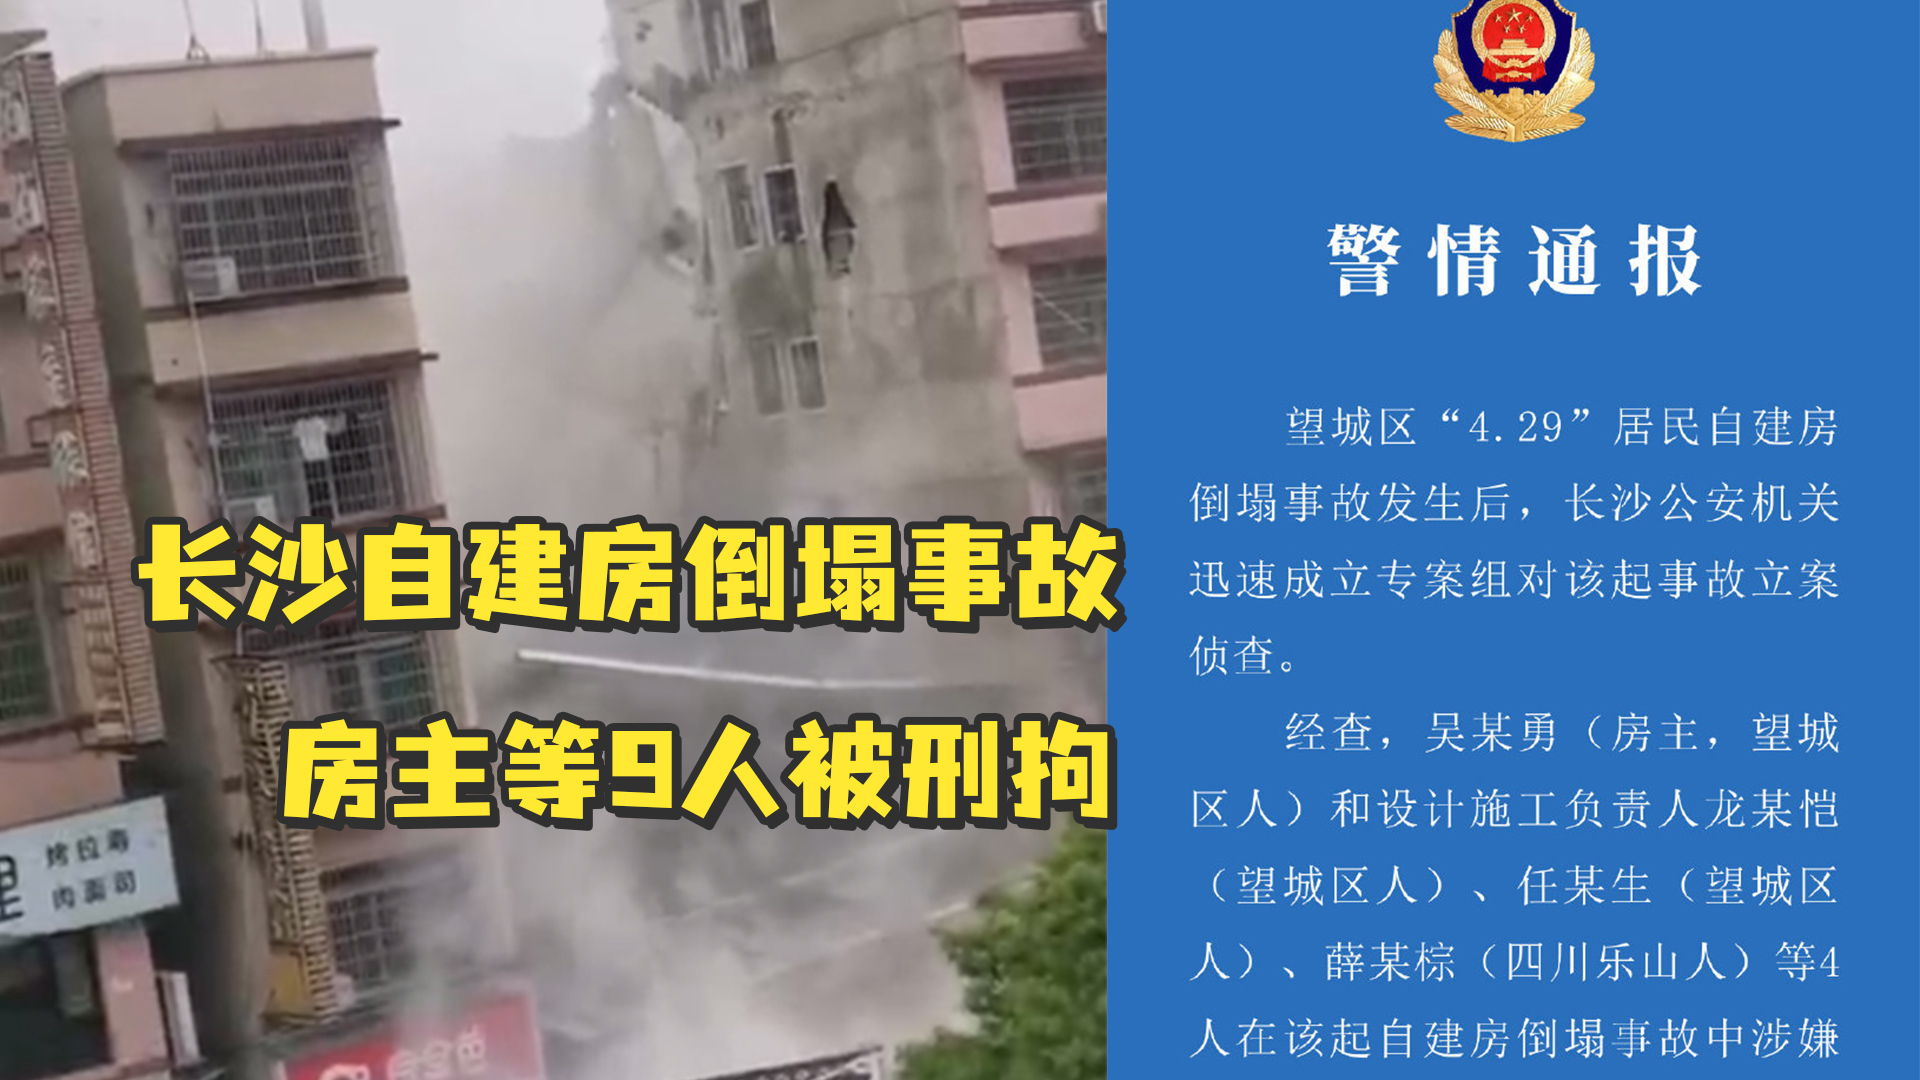 湖南長沙樓宇倒塌事故 九名嫌疑人被批捕 | Now 新聞